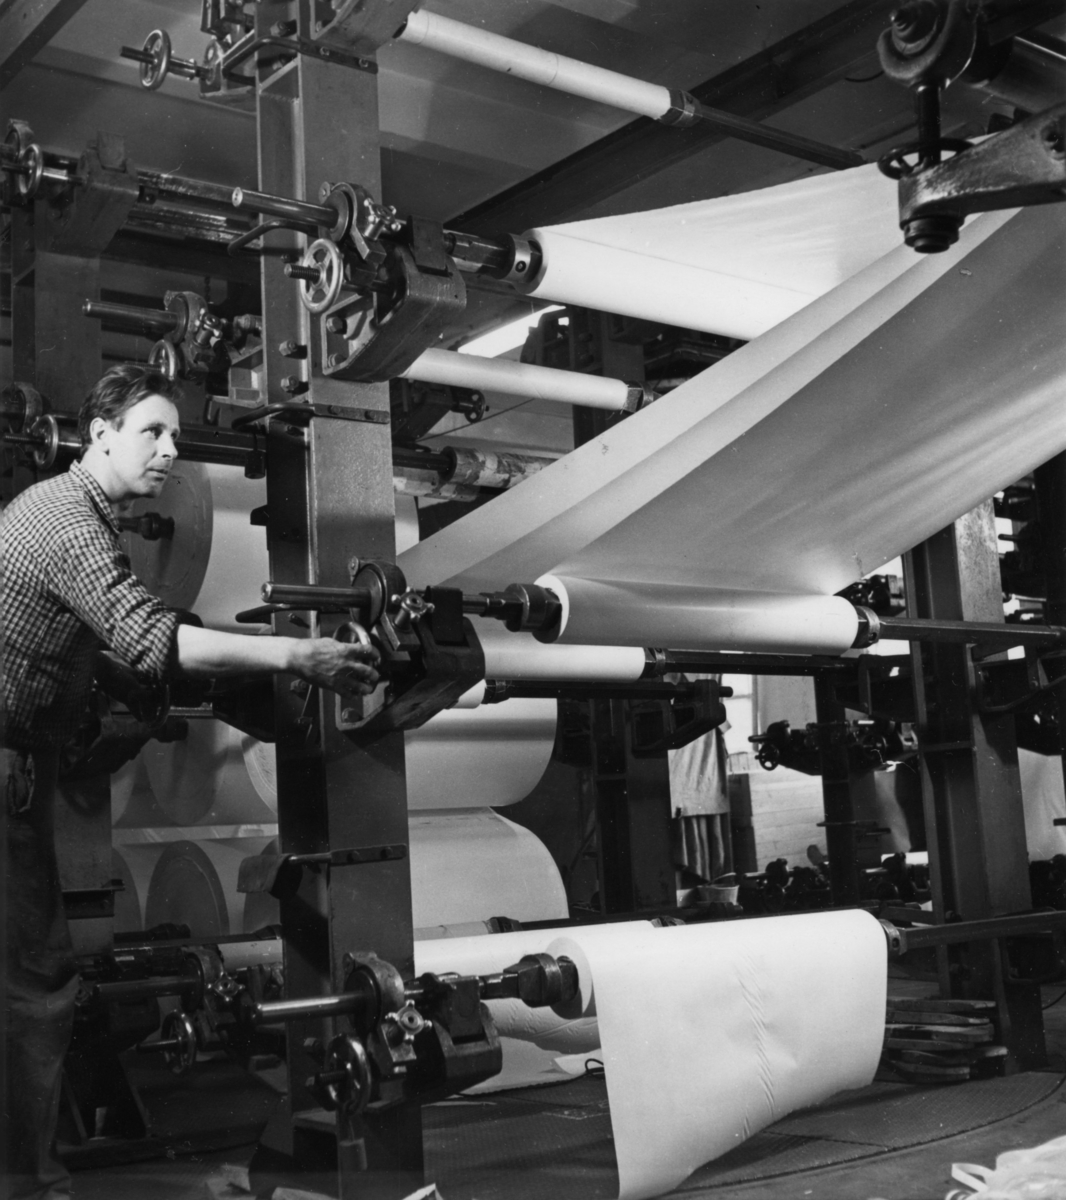 En man arbetar vid en maskin på Papyrus, okt. 1951.
Klipp nr. 10.
Sigurd Karlsson